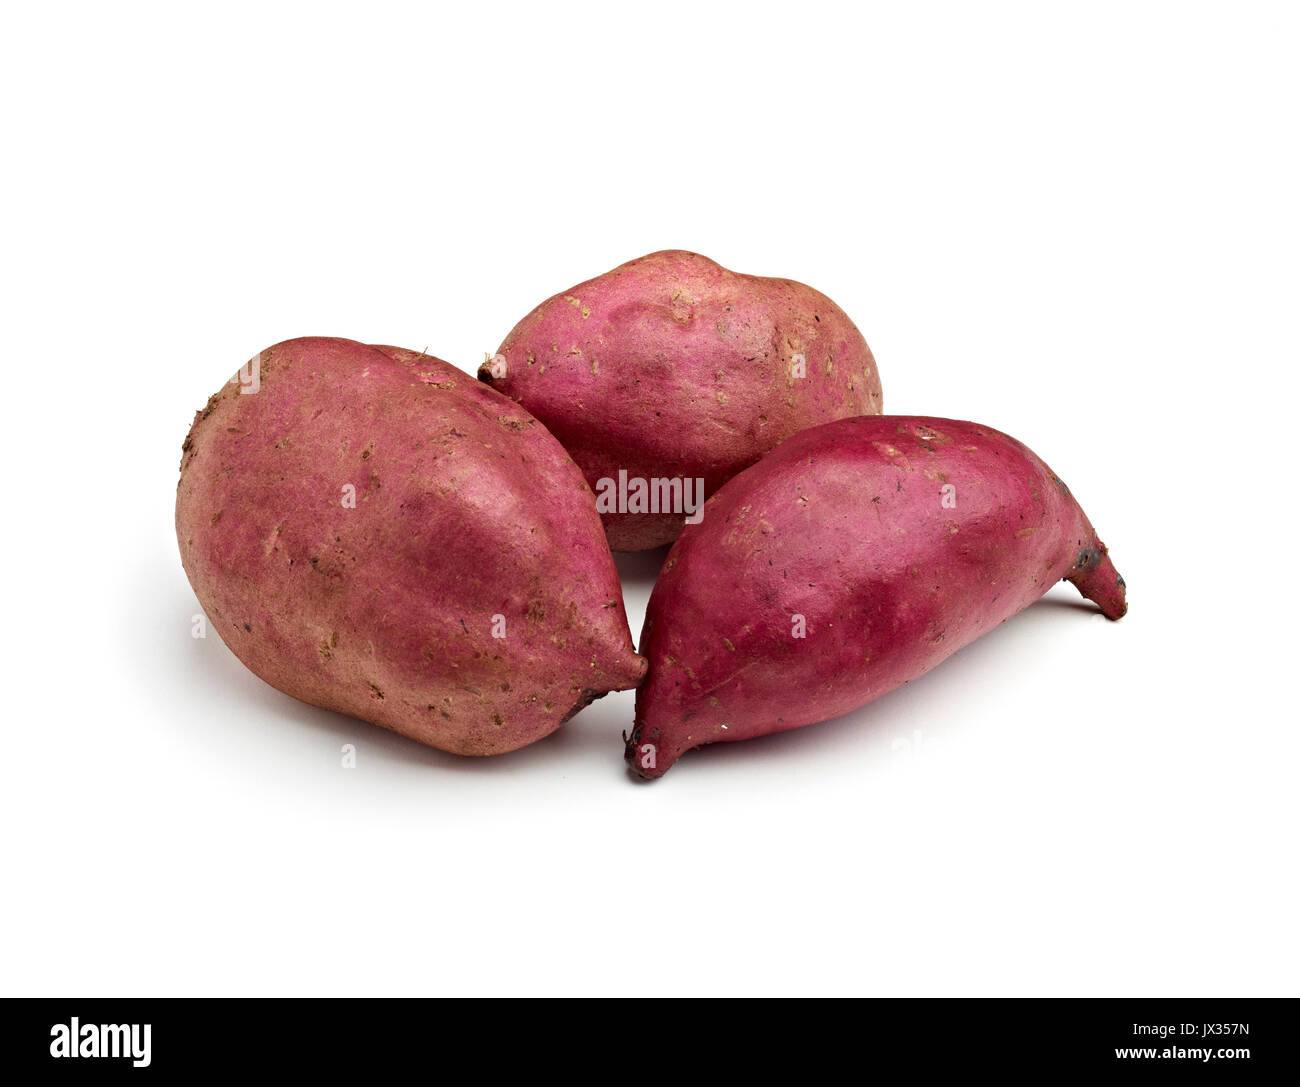 Red sweet potato kumera Stock Photo